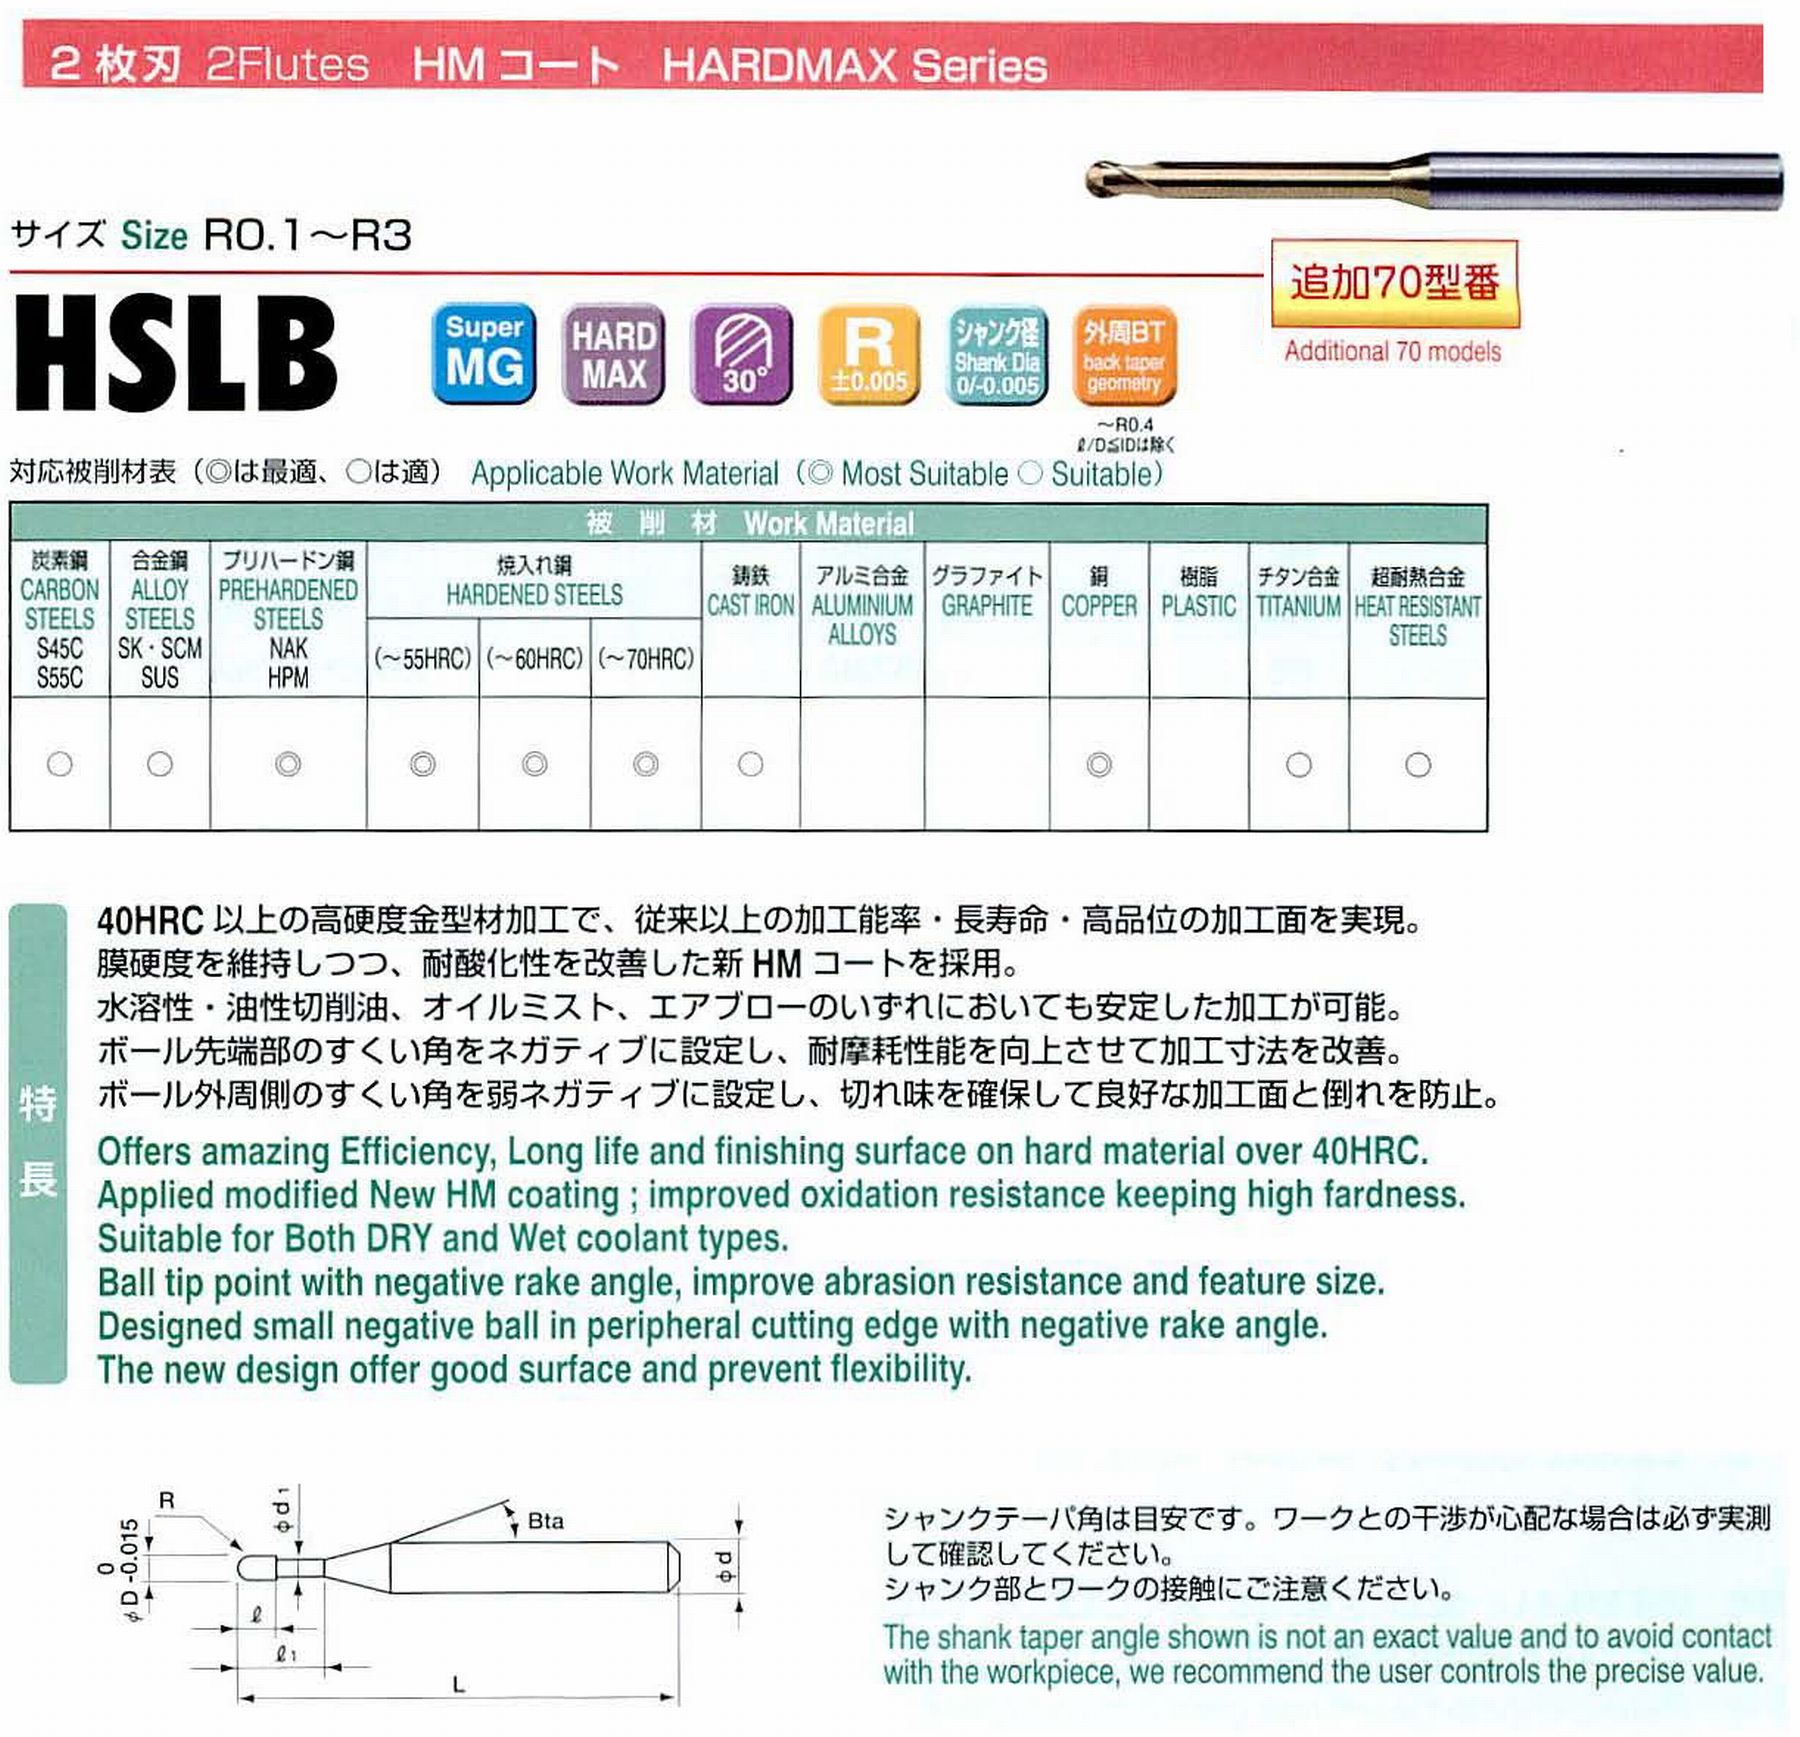 ユニオンツール 2枚刃 HSLB2020-180 ボール半径R1 有効長18 刃長1.6 首径1.93 シャンクテーパ角16° 全長55 シャンク径4